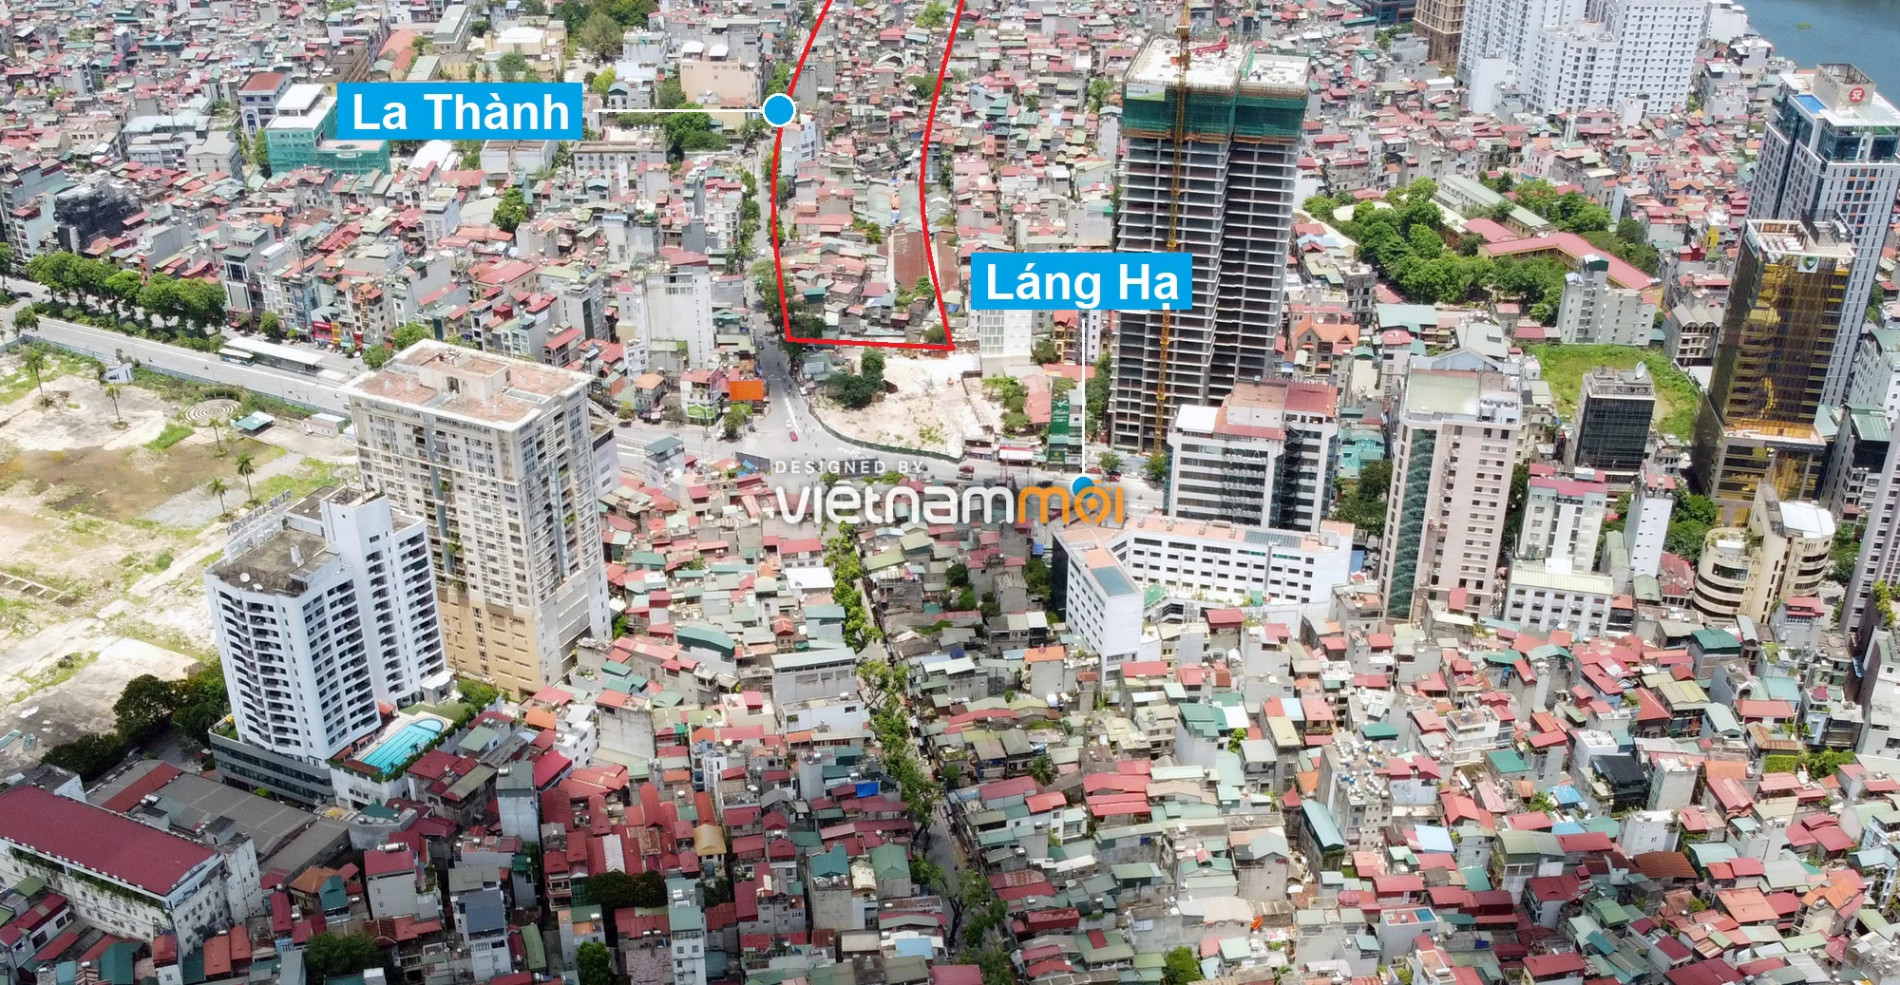 Những khu đất sắp thu hồi để mở đường ở quận Đống Đa, Hà Nội (phần 4) - Ảnh 16.